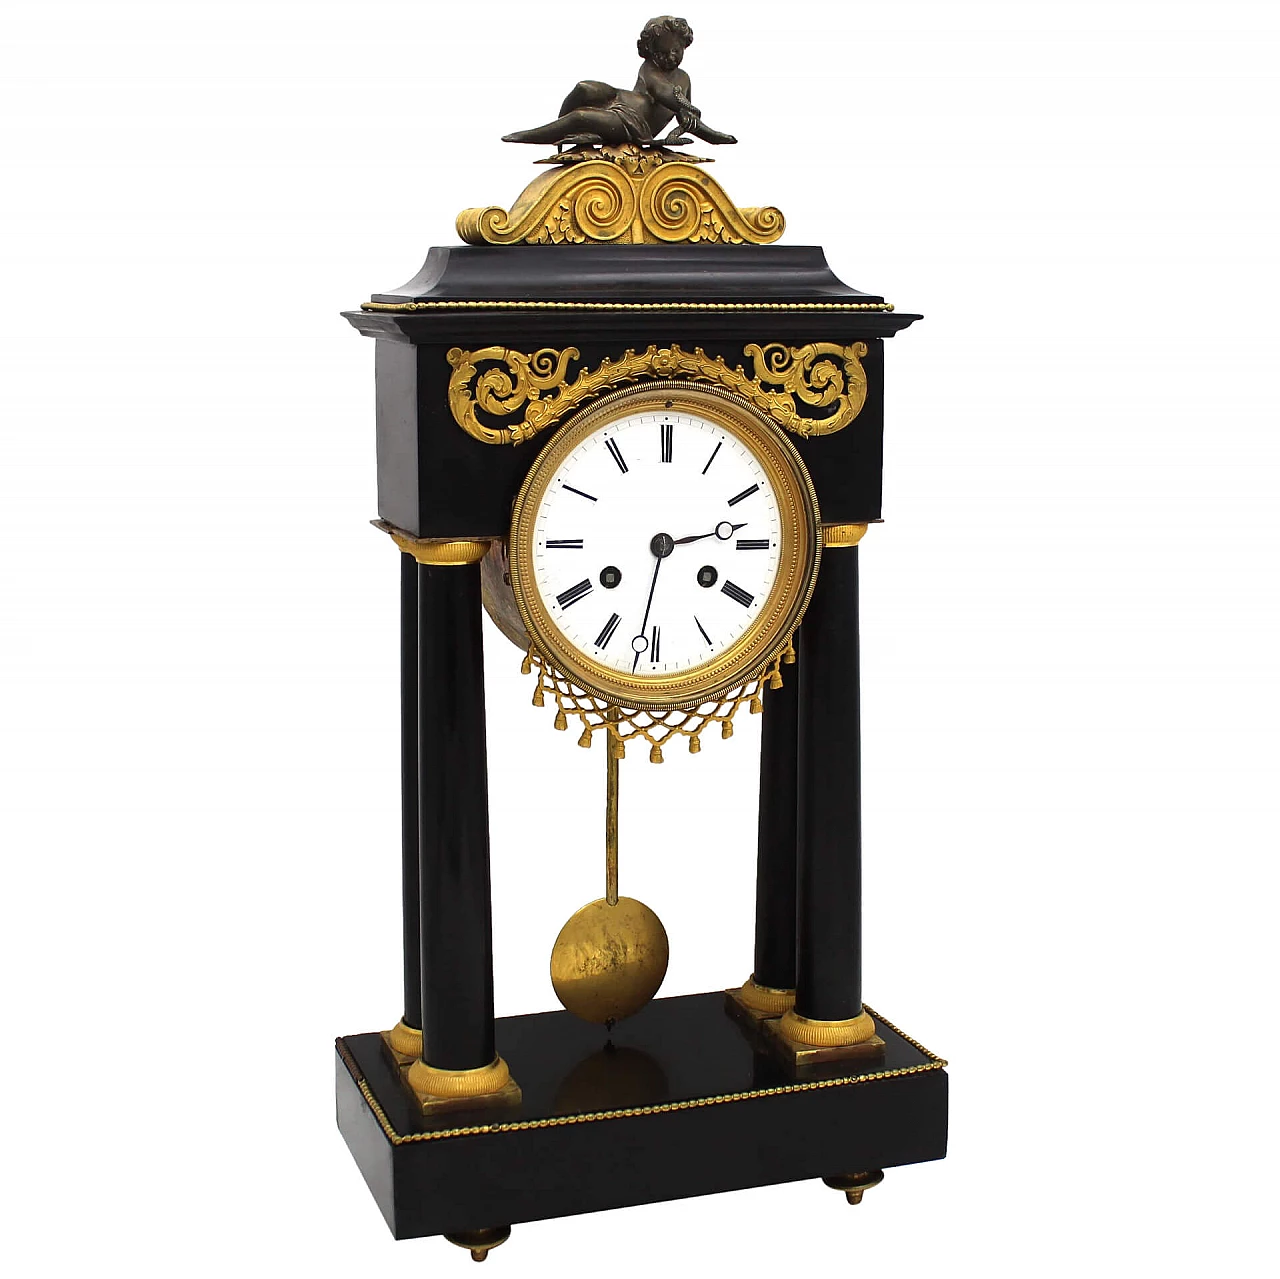 Direttorio clock with pendulum in gilded bronze and black Belgium marble, 18th century 1253348